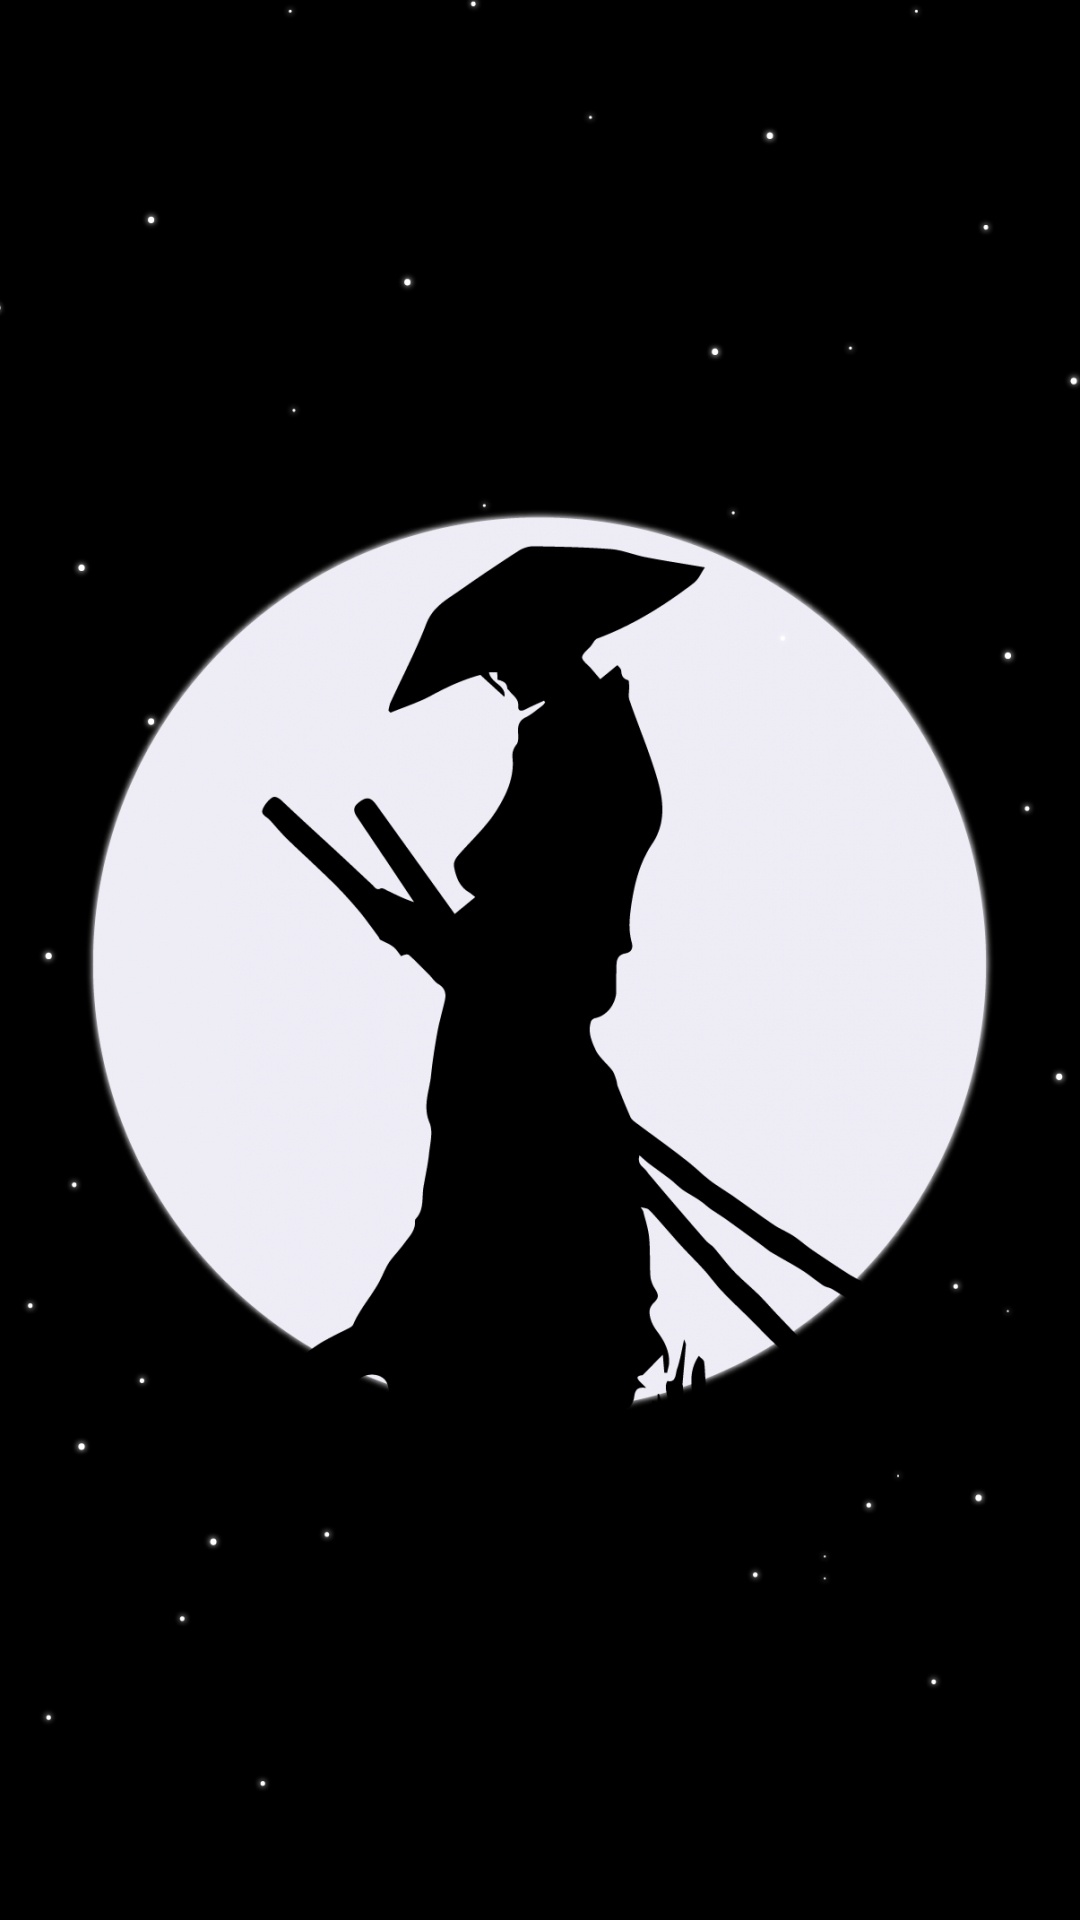 Samurai, Mond, Amoled, Raum, Astronomisches Objekt. Wallpaper in 1080x1920 Resolution